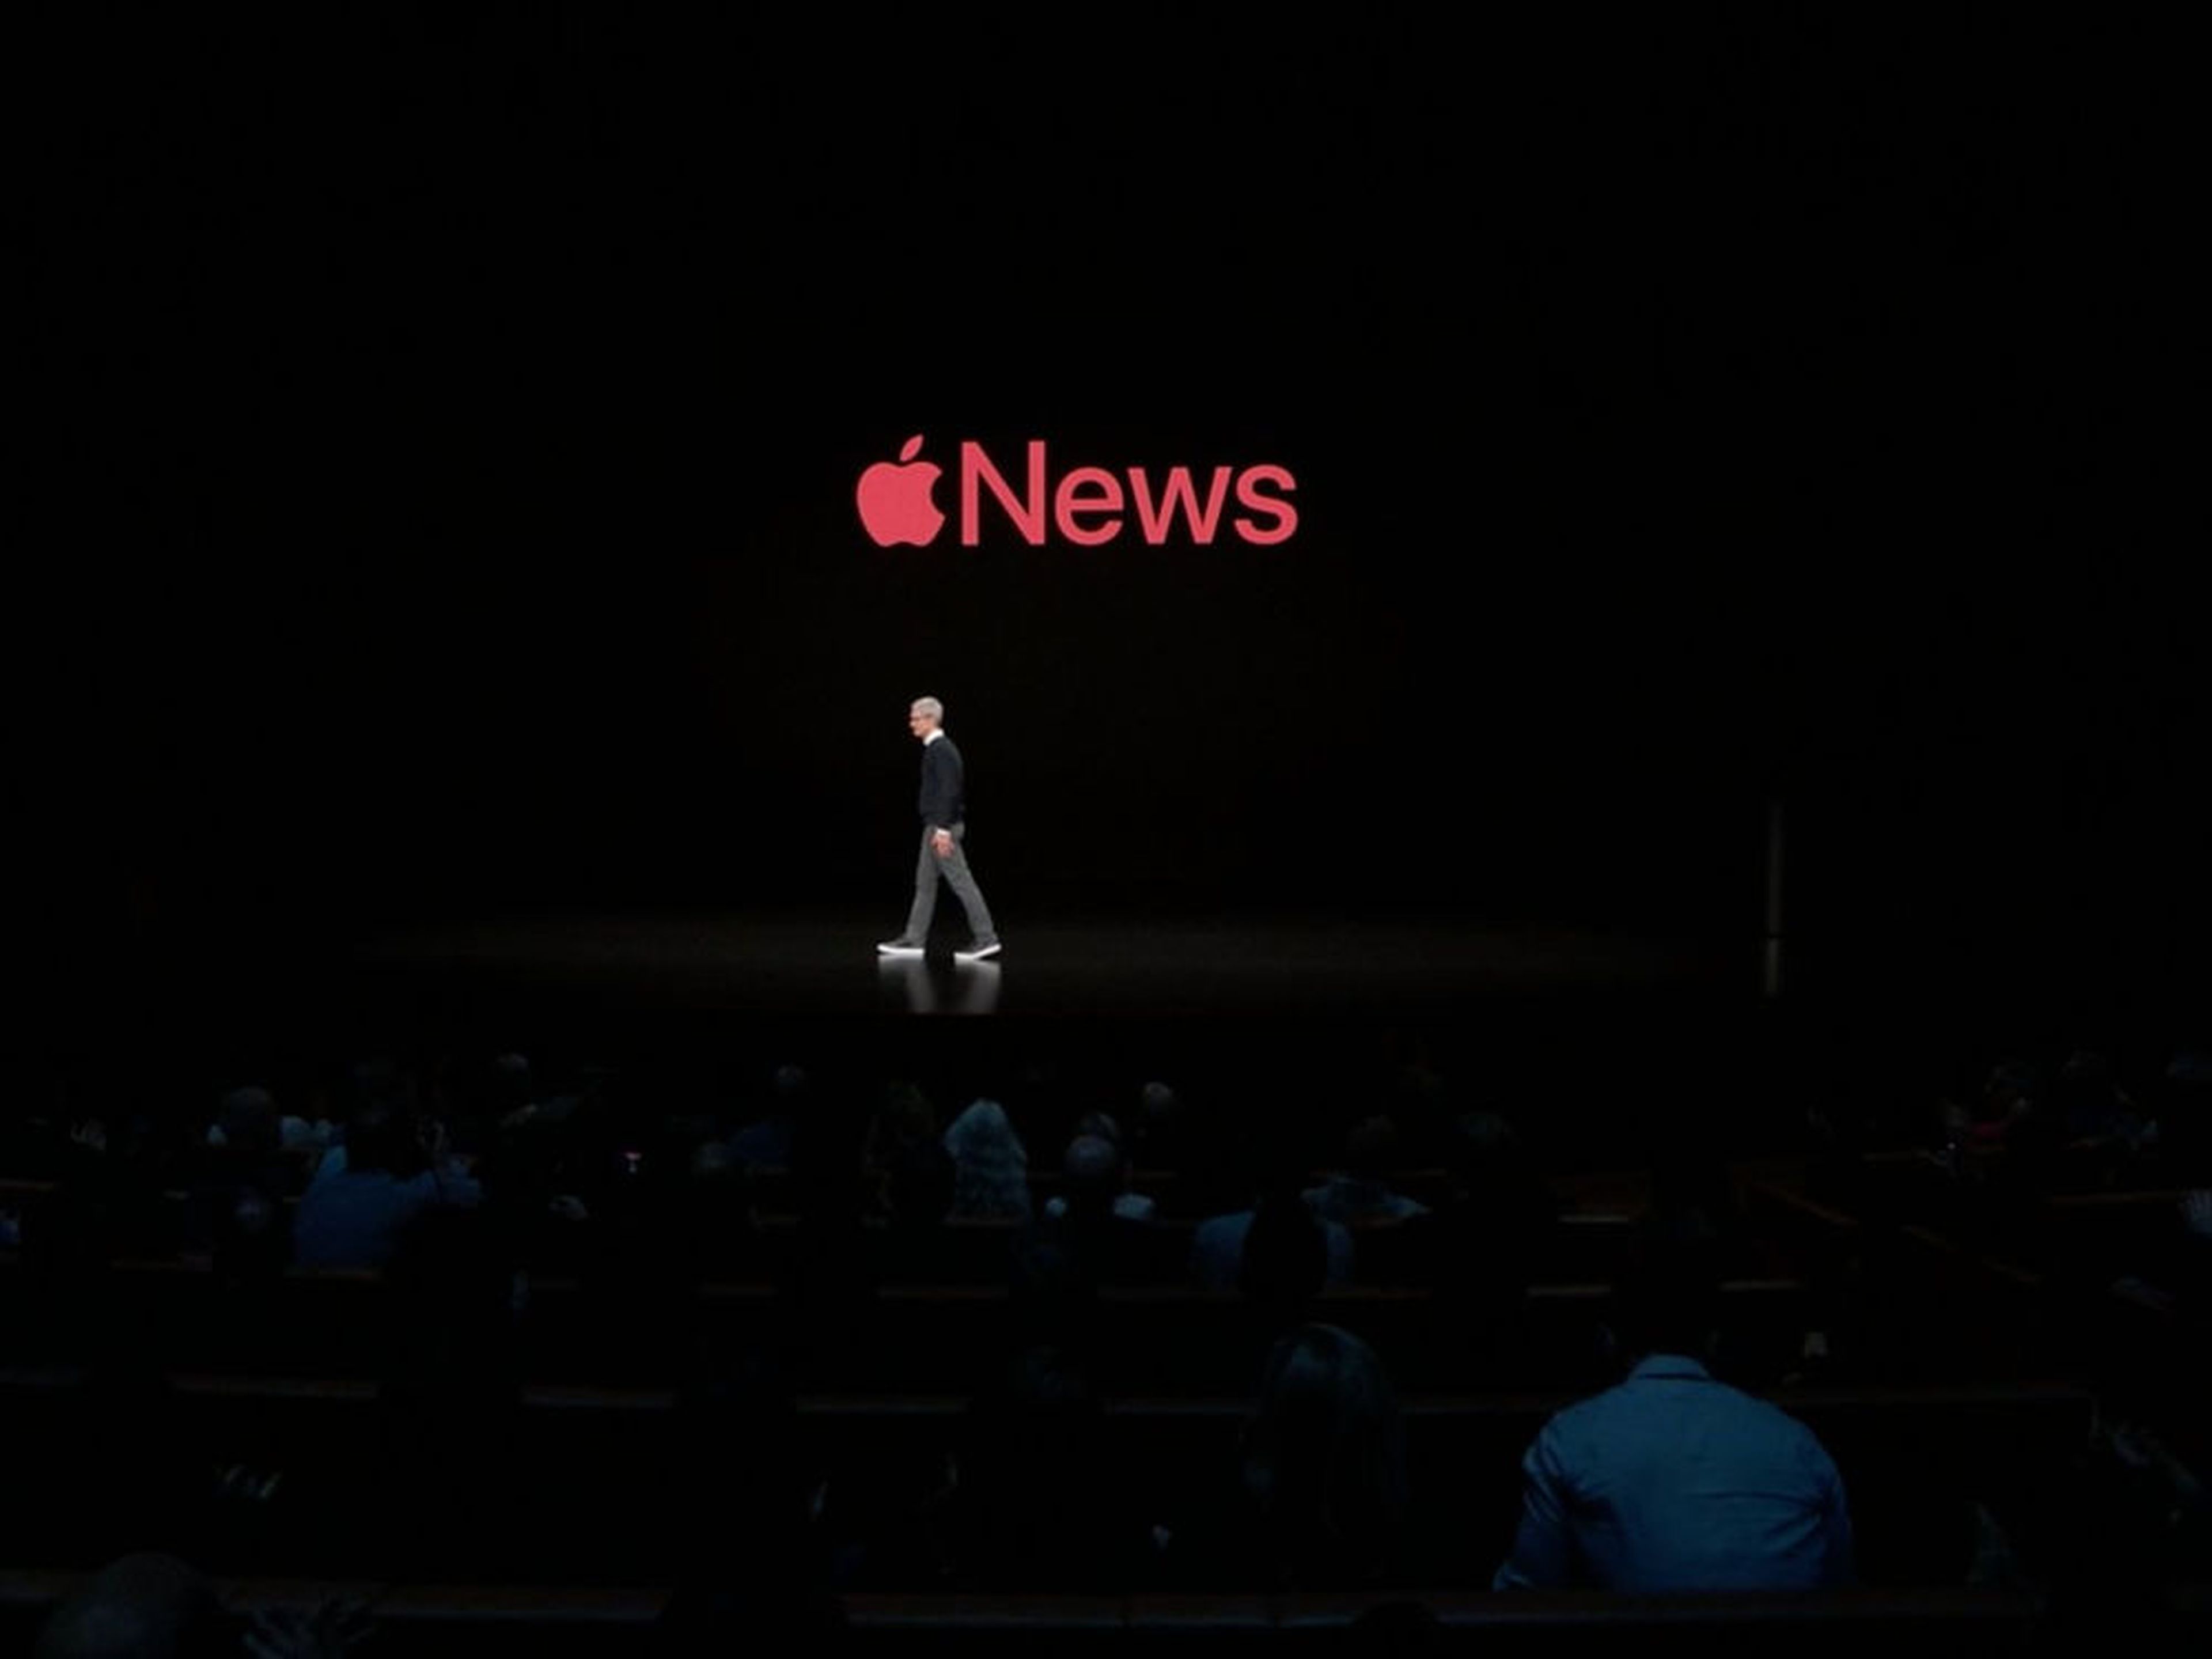 Apple news